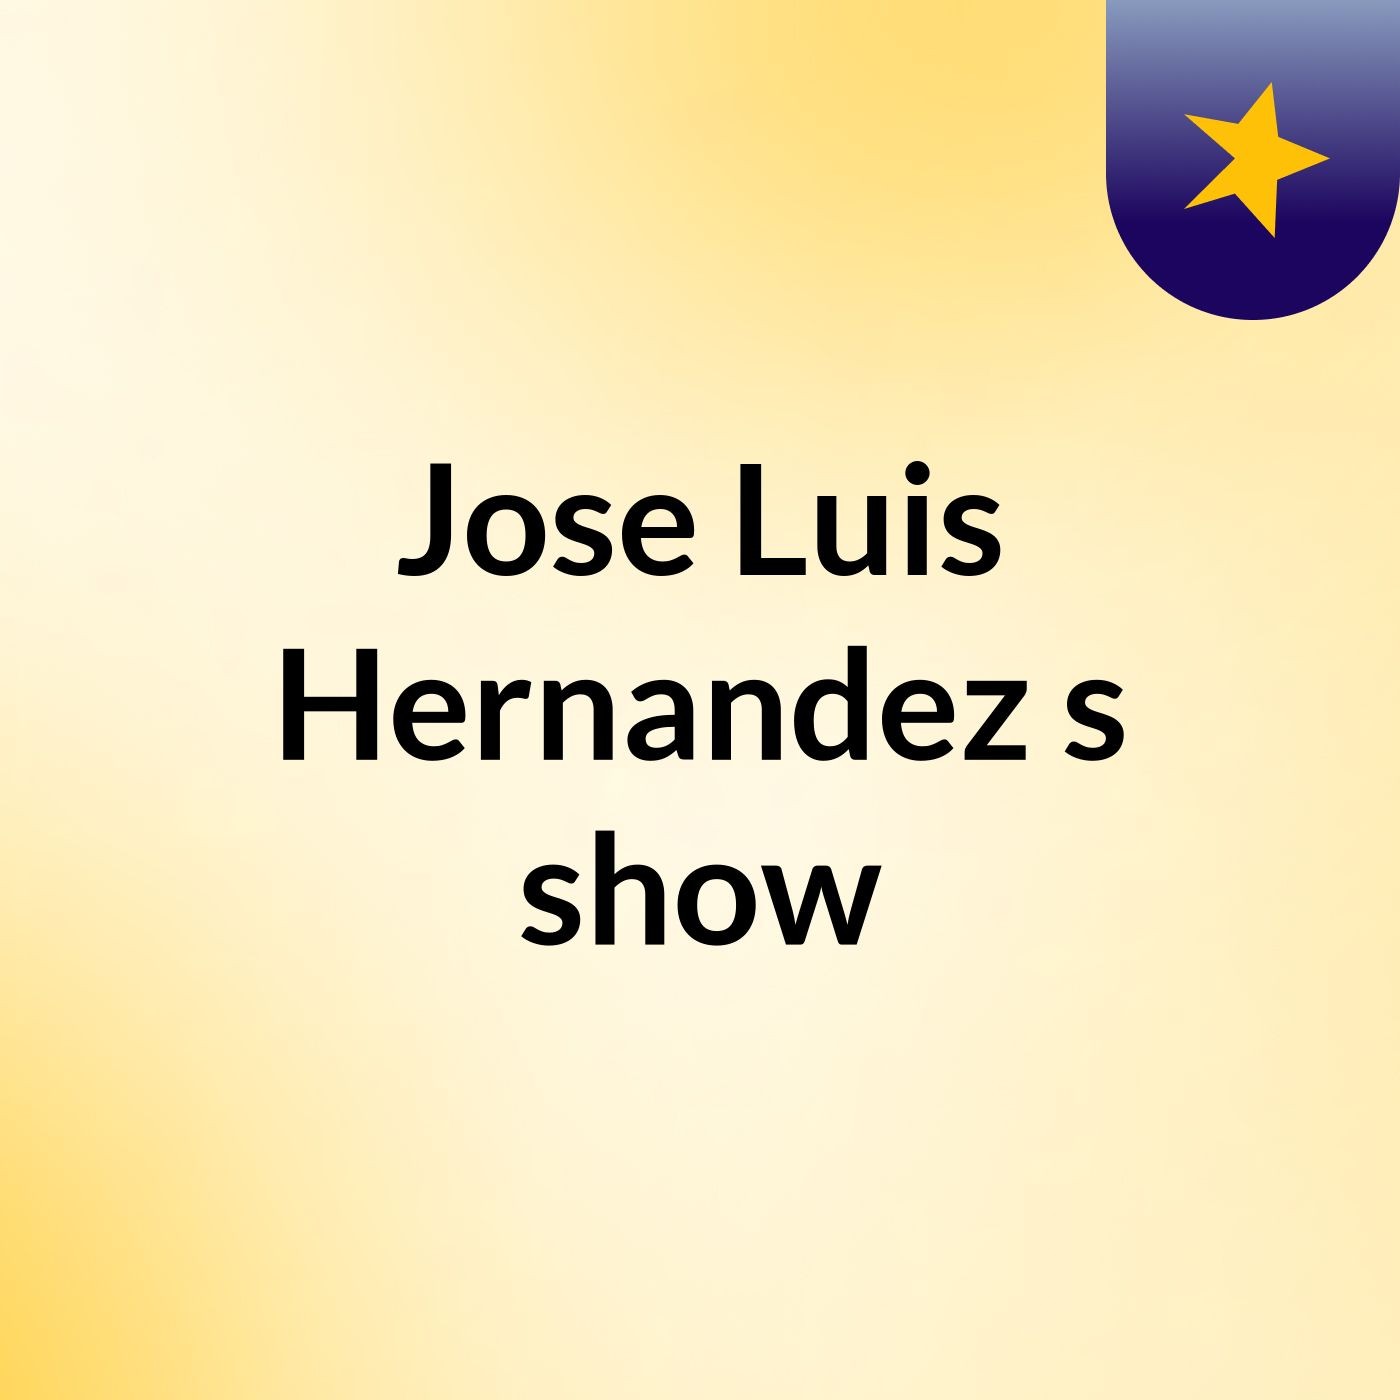 Jose Luis Hernandez's show